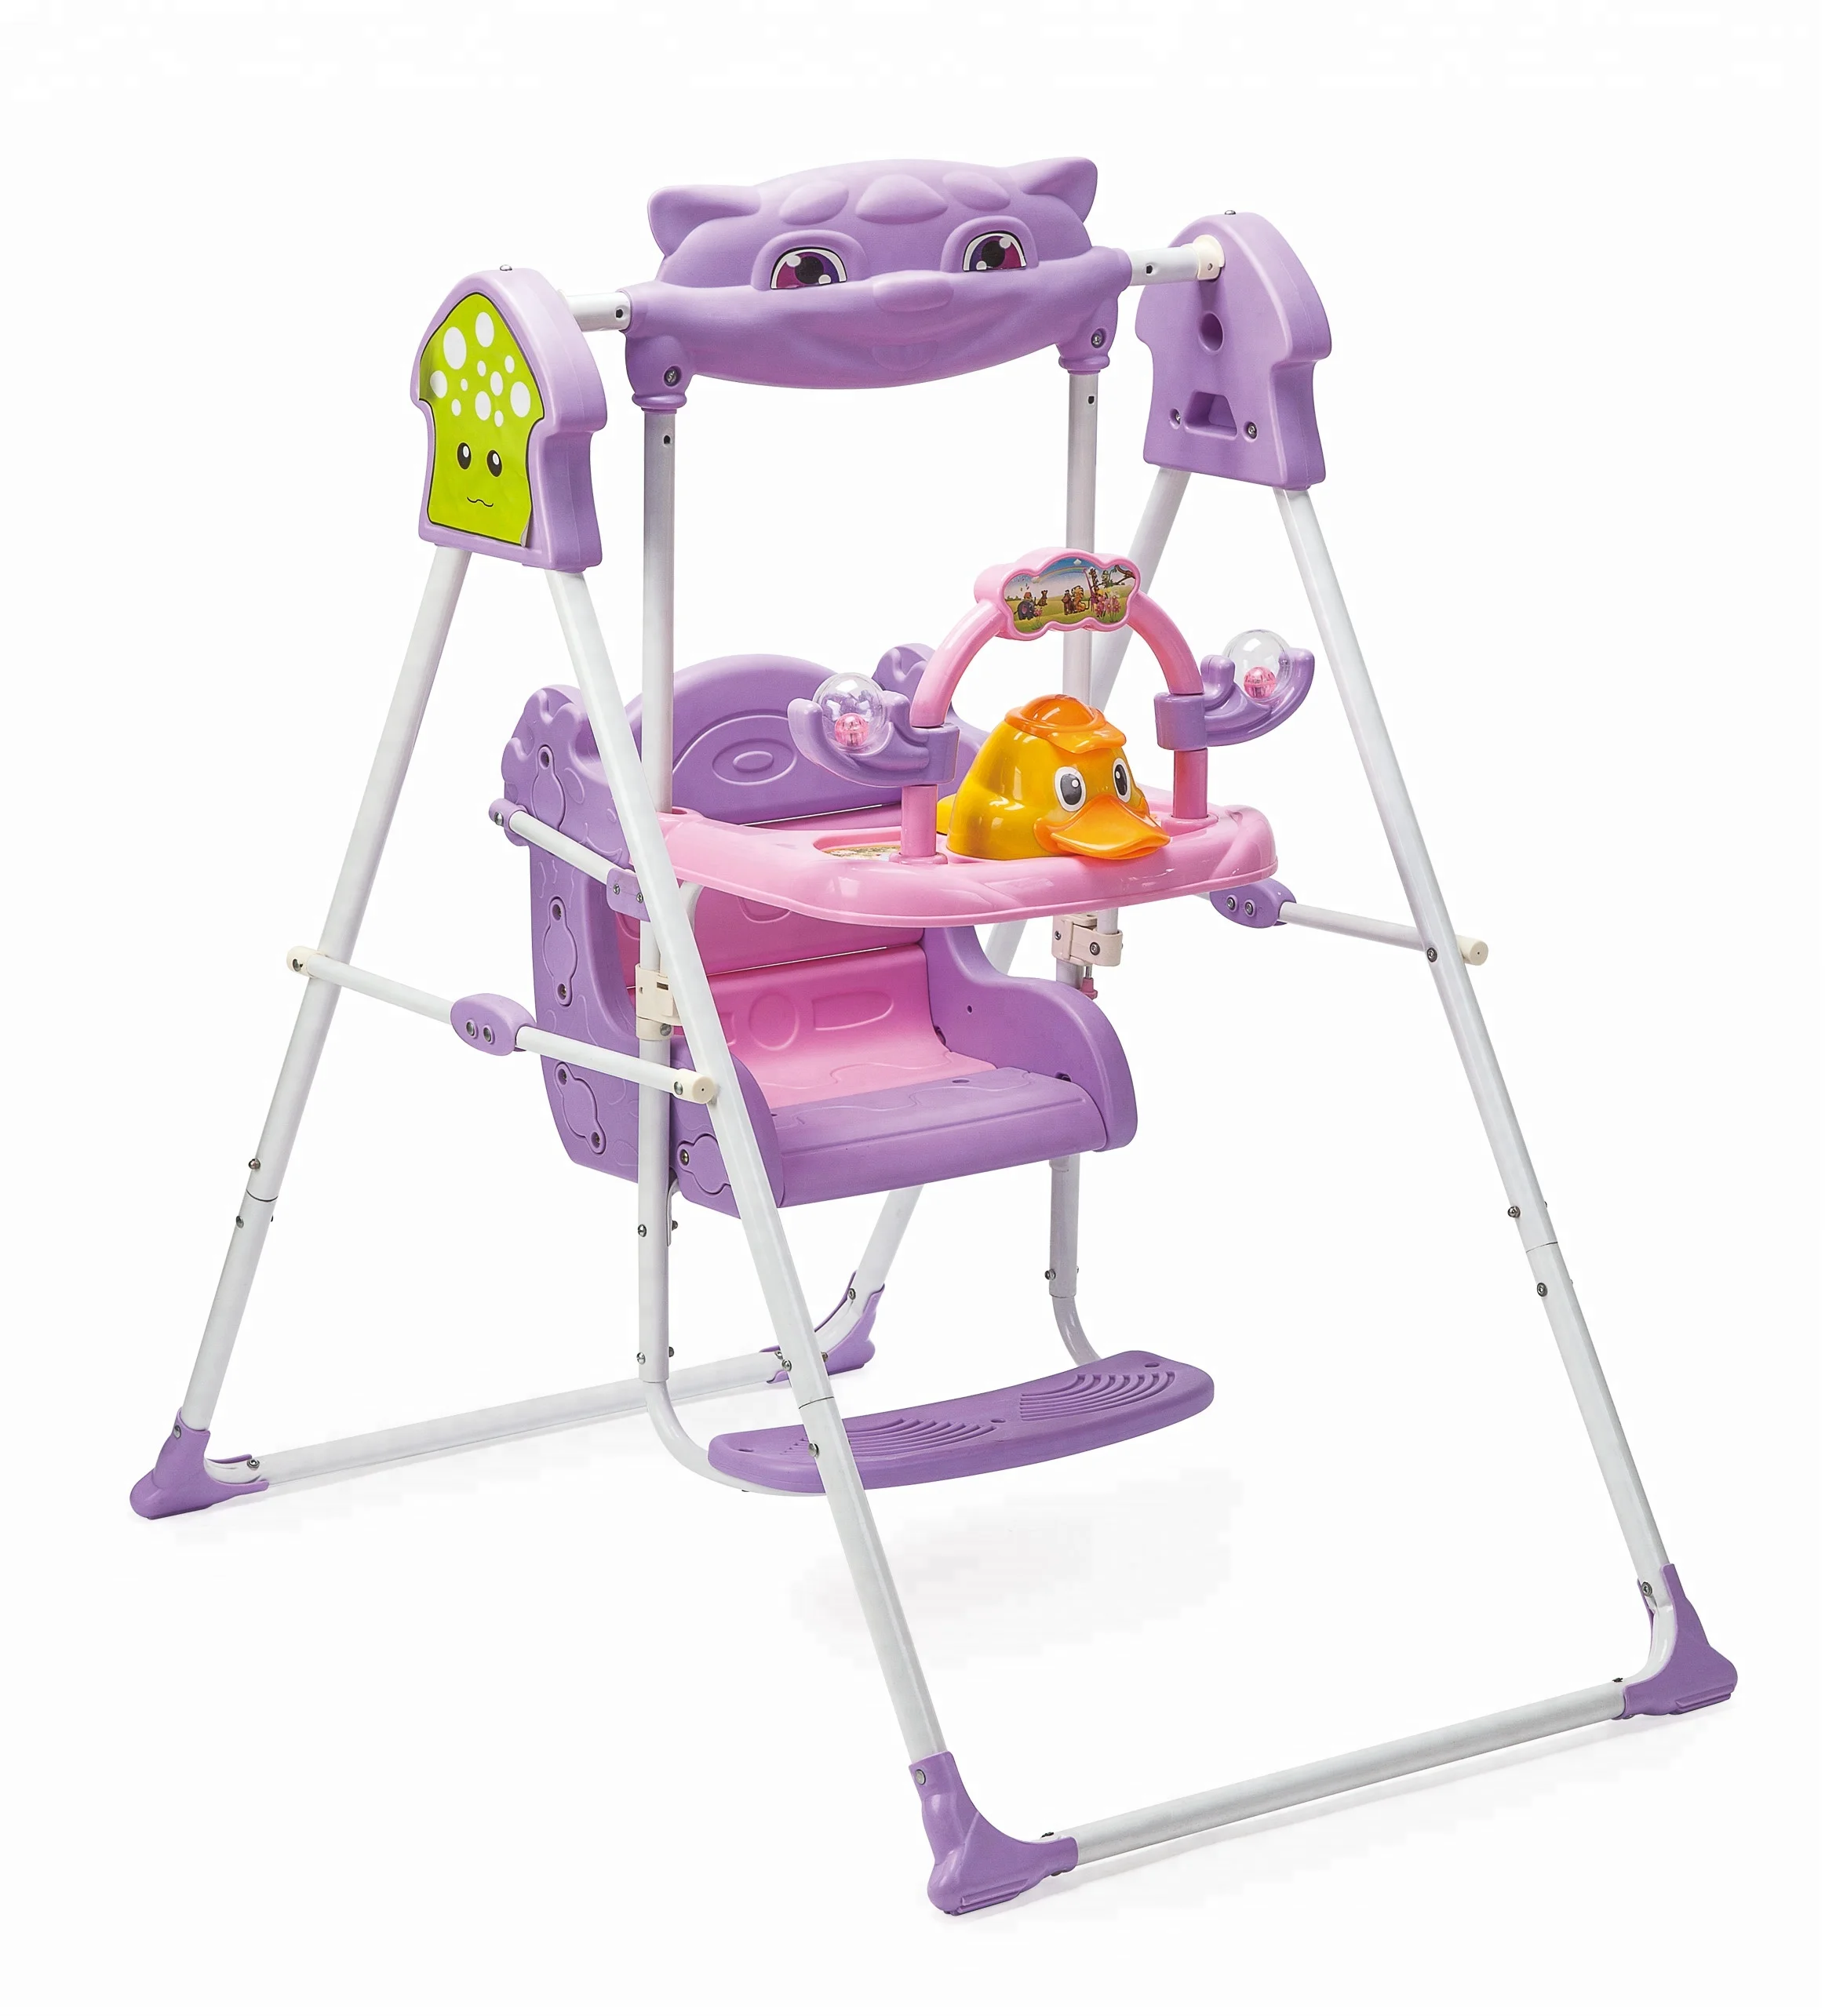 Hot Sale Baby Swing Chair In B- Kids Ll58104 - Buy Hot Sale Baby Swing